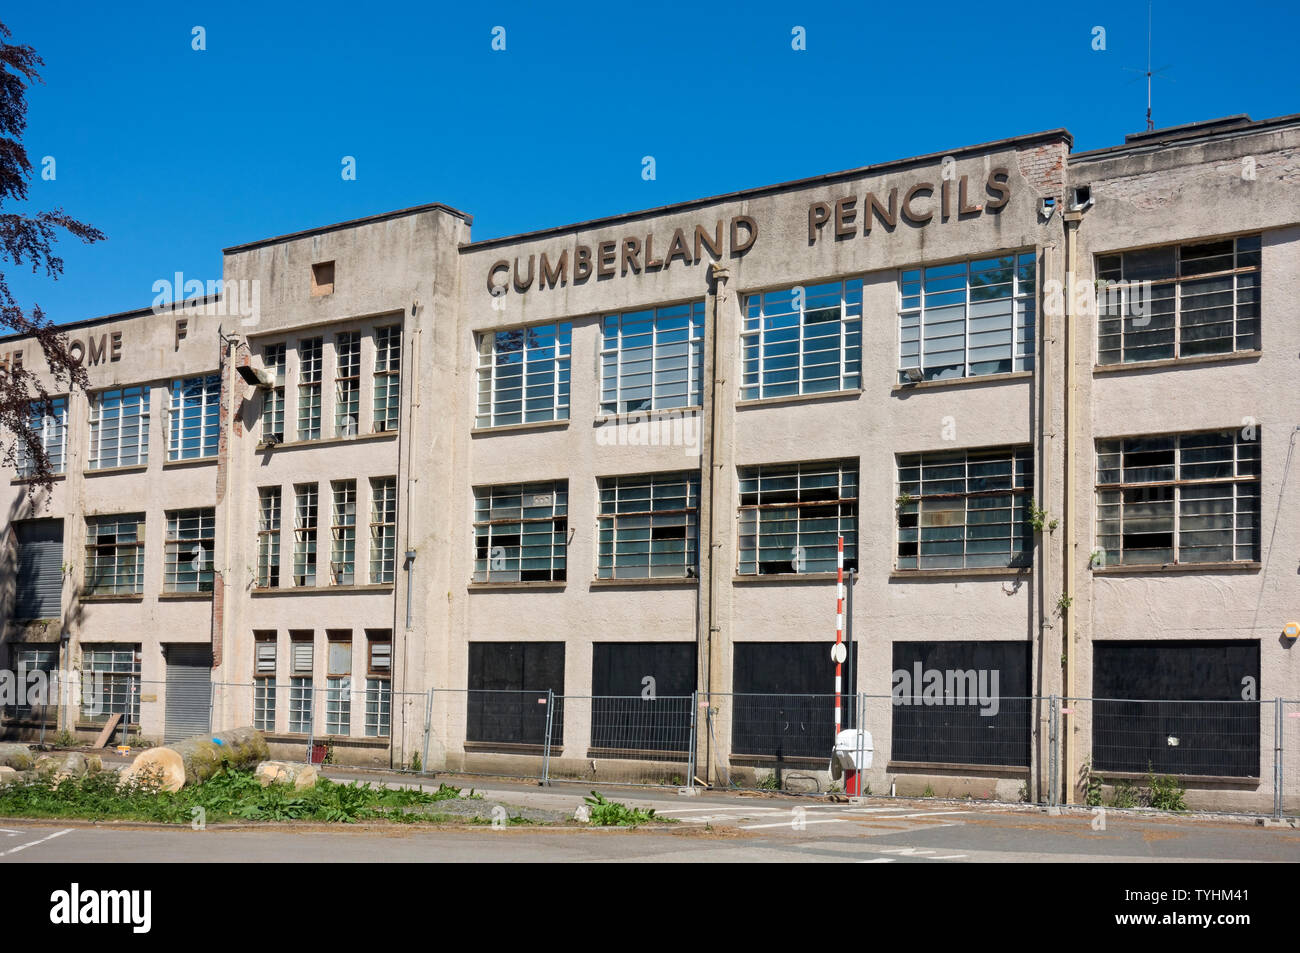 Verkommen ehemaliges ehemaliges Cumberland Pencils Bleistift-Fabrikgebäude Keswick Cumbria England Vereinigtes Königreich GB Großbritannien Stockfoto